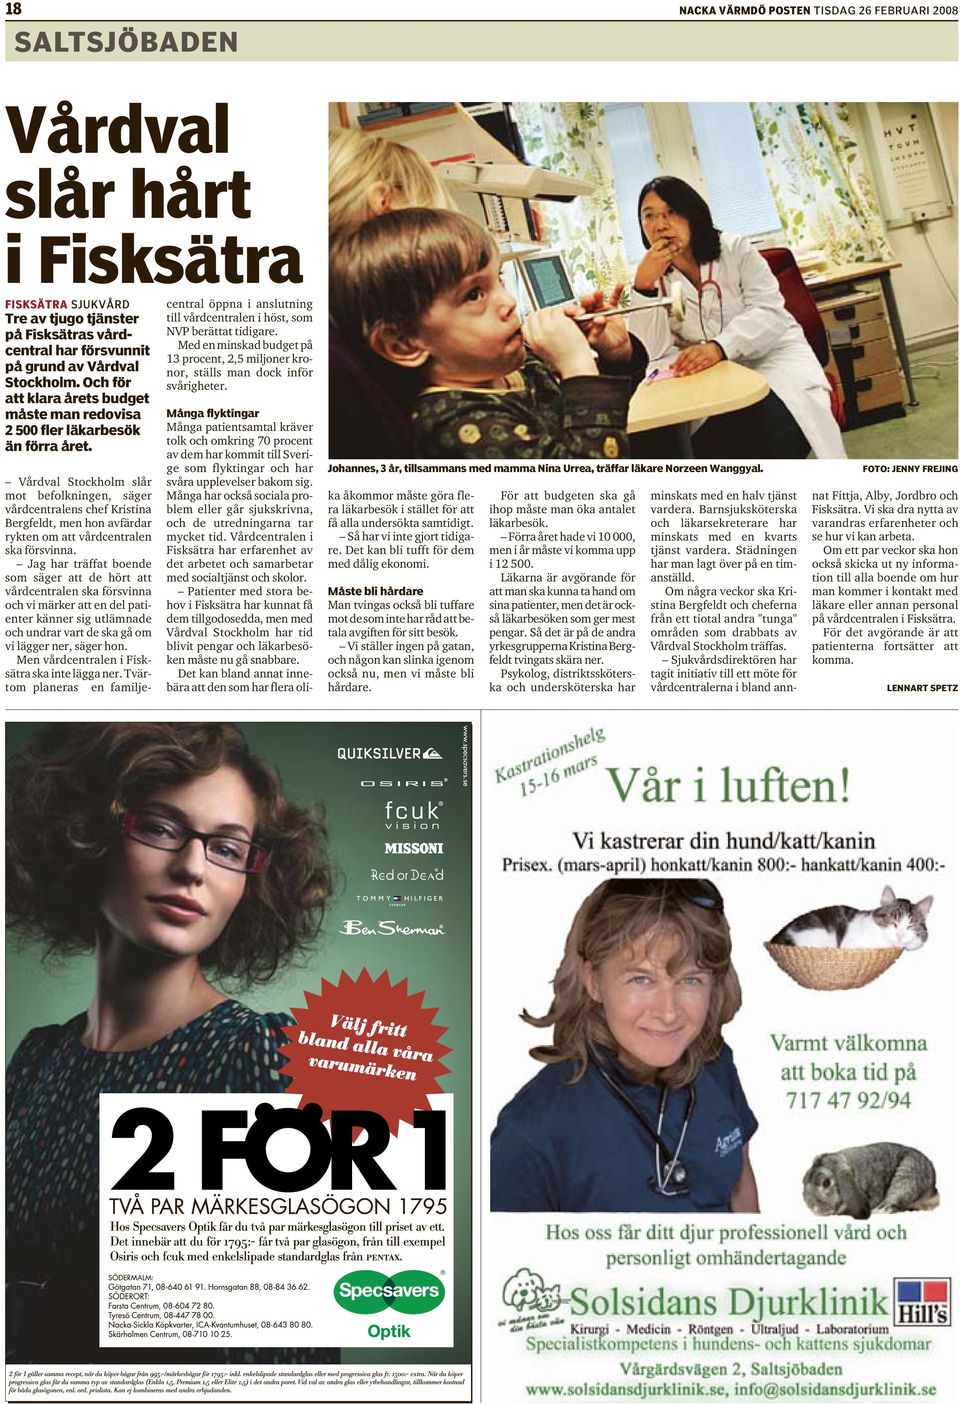 Vårdval Stockholm slår mot befolkningen, säger vårdcentralens chef Kristina Bergfeldt, men hon avfärdar rykten om att vårdcentralen ska försvinna.